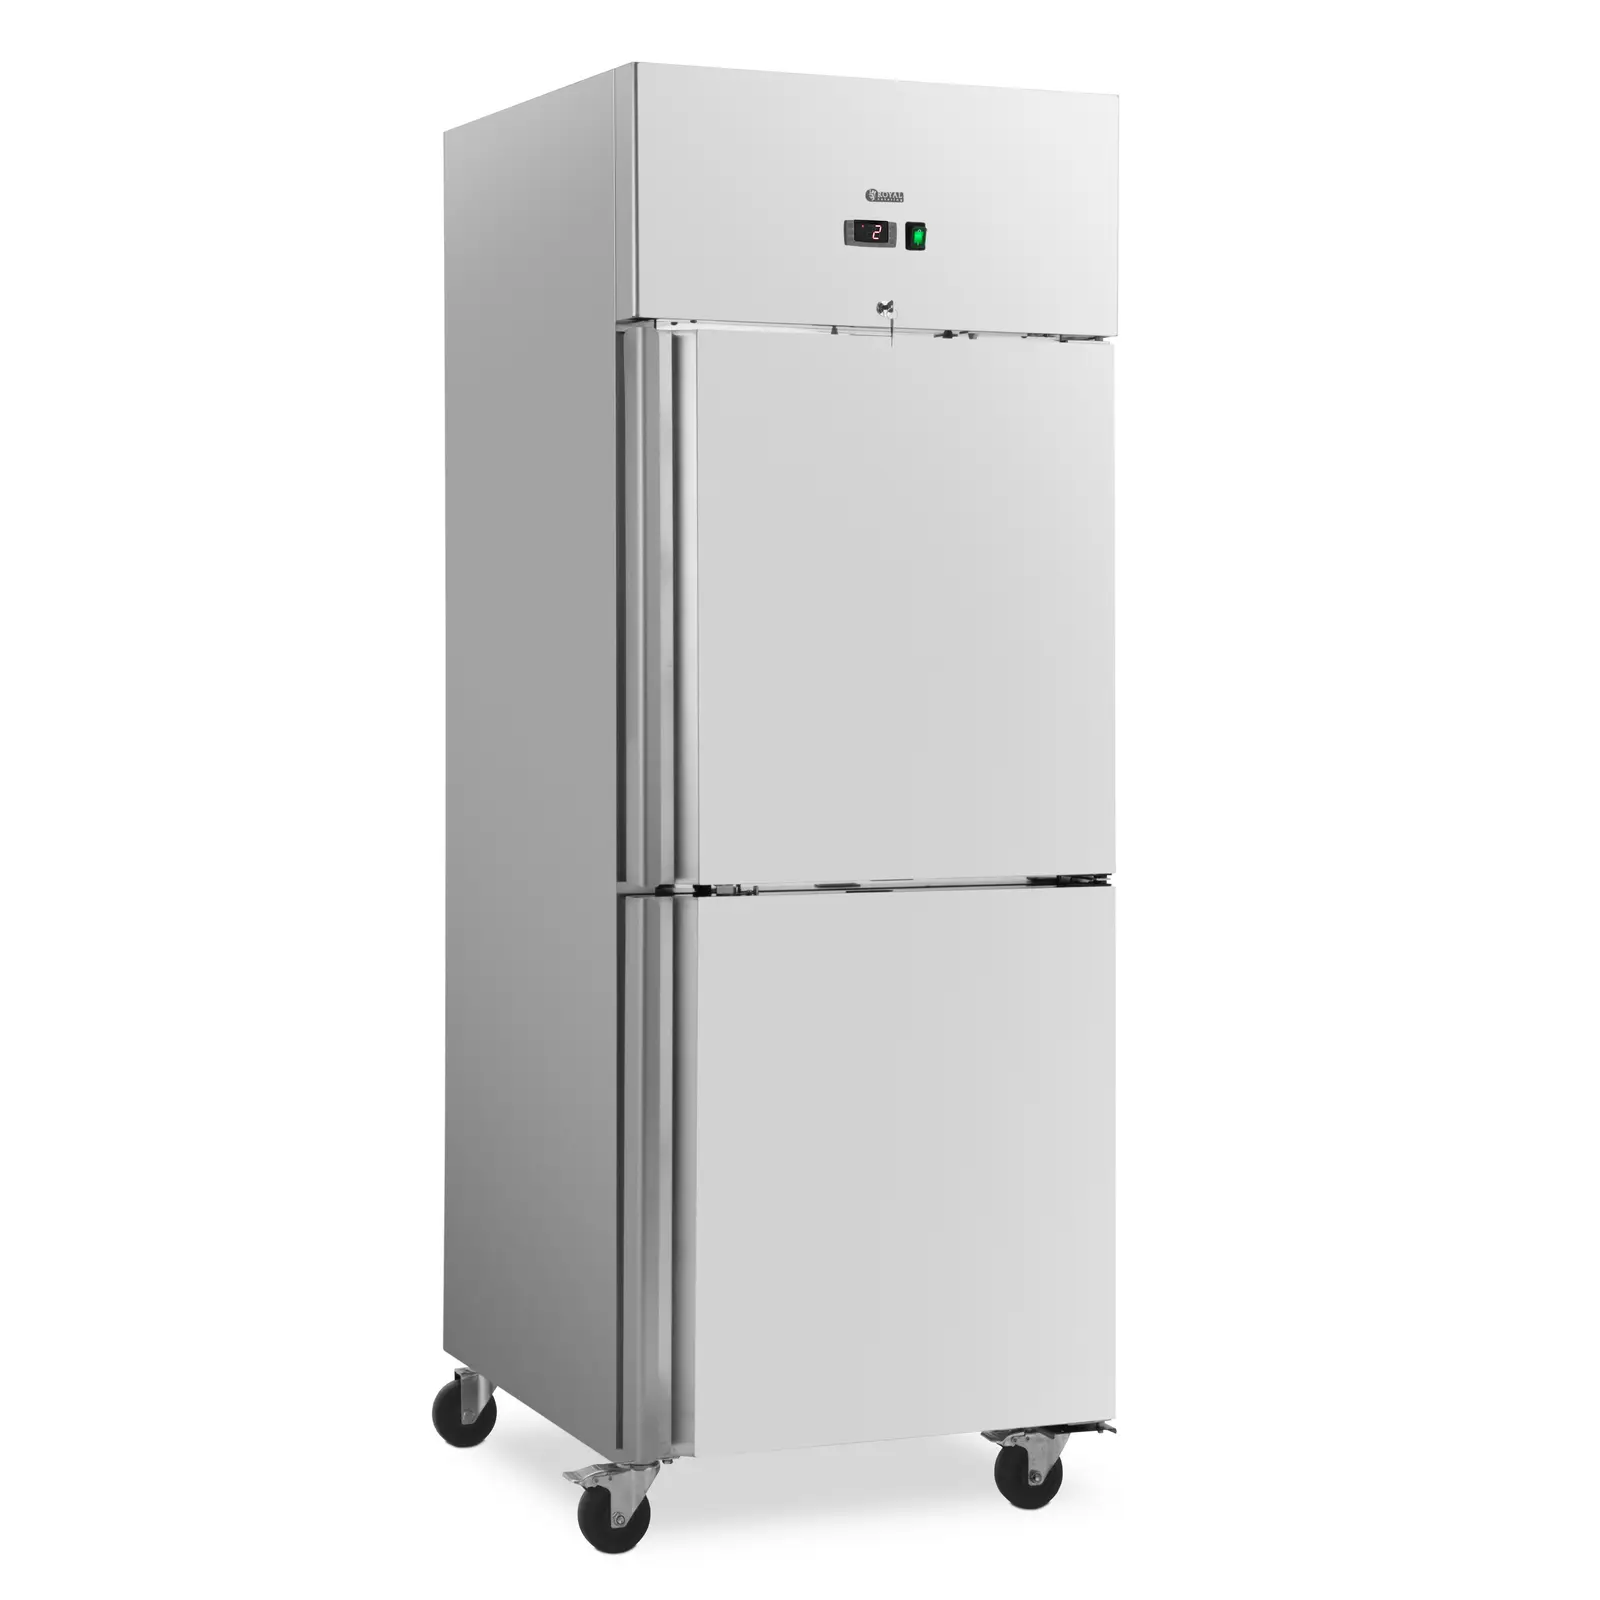 Ipari hűtőszekrény - 485 l - rozsdamentes acél - 2 ajtó - 4 kerék - zárható - Royal Catering